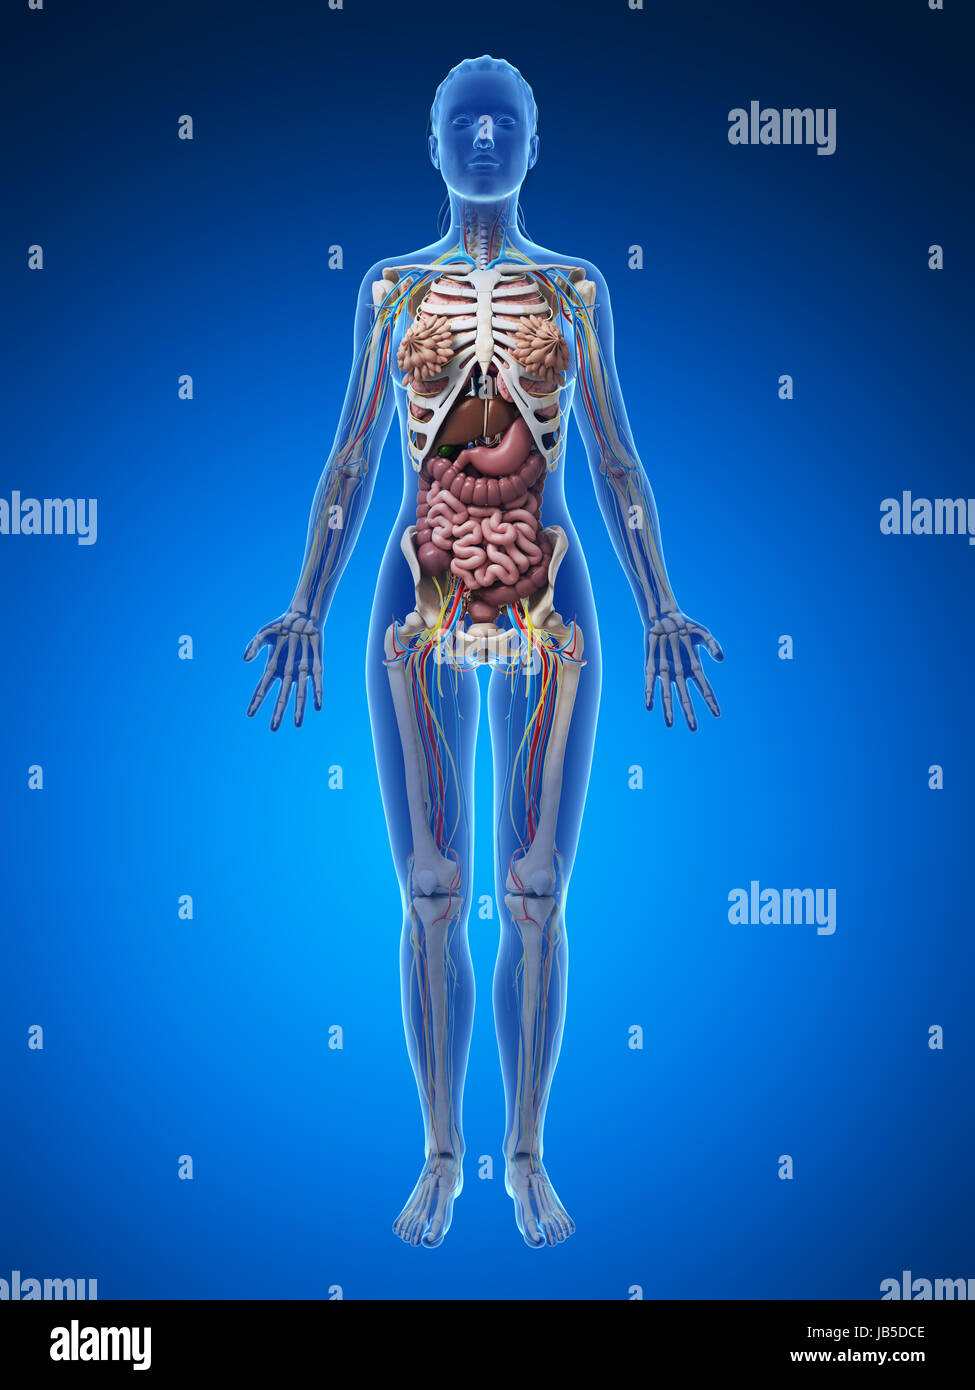 Female Body Diagram - Inside Female Human Body | Body organs diagram